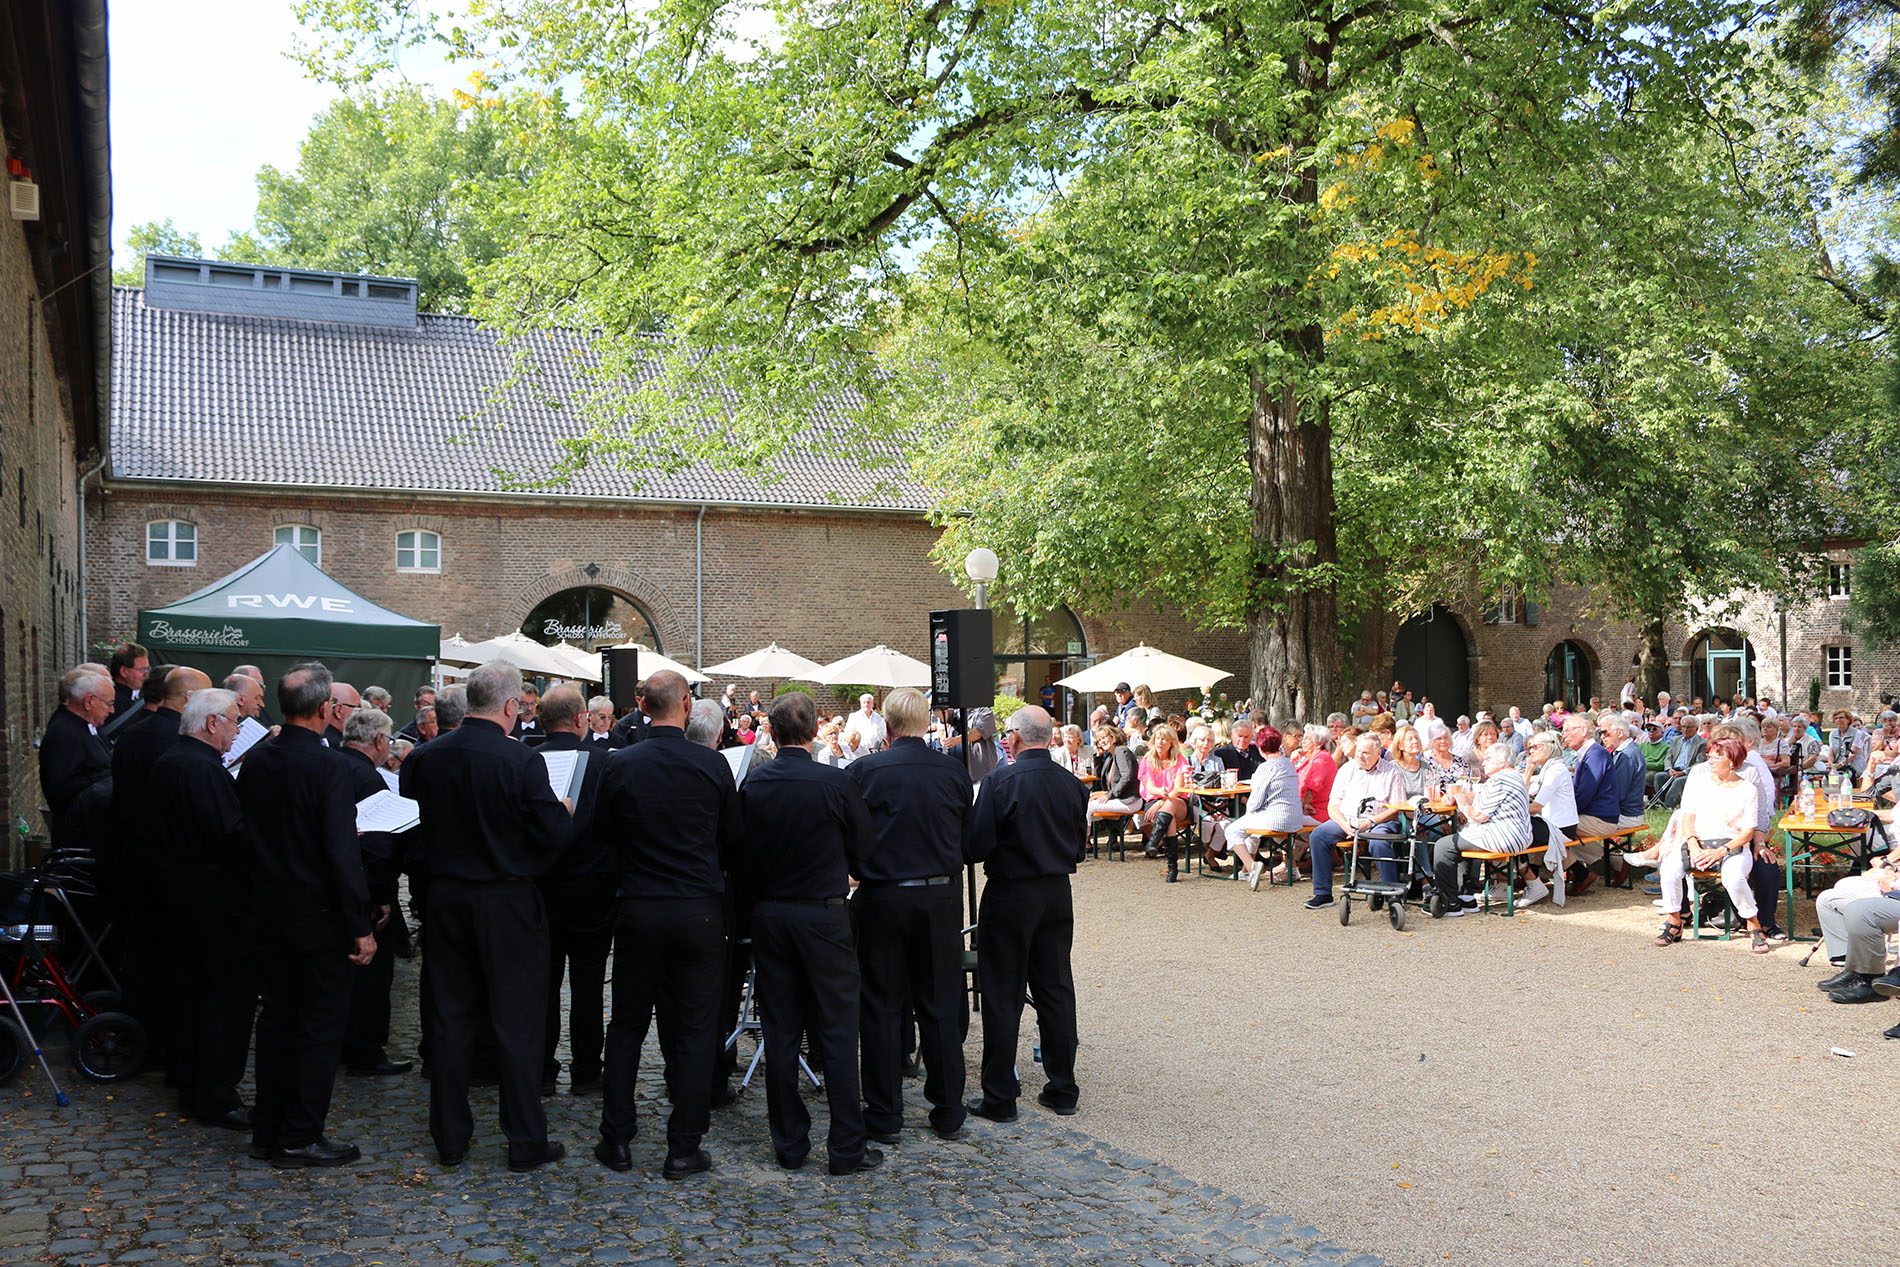 Mit über 300 Zuschauern war das Sommer Open-Air-Konzert auf Schloss Paffendorf an diesem Tag ein echter Publikumsmagnet.